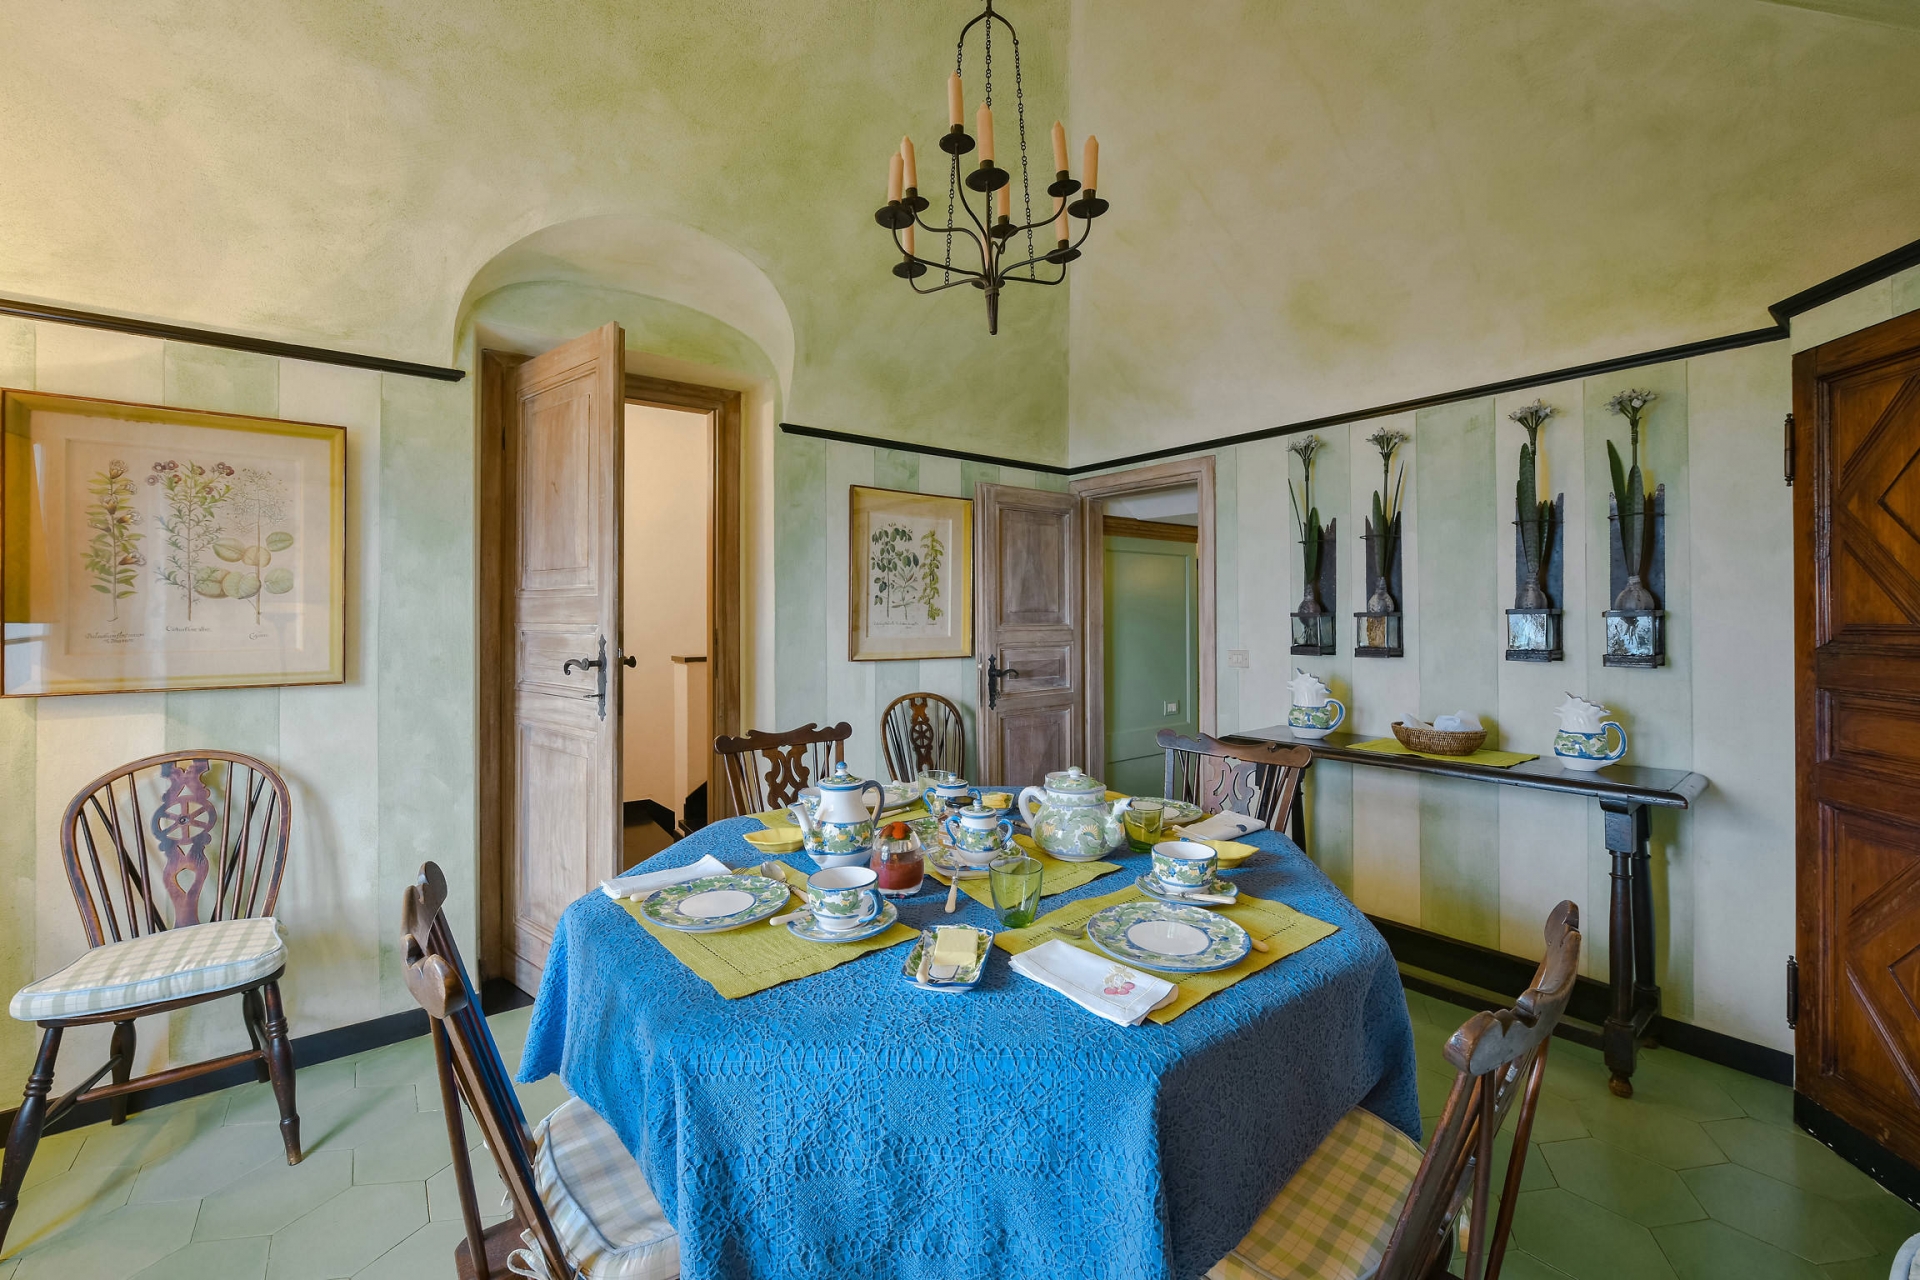 Phong cách Địa Trung Hải trong phòng ăn với bức tường màu xanh lá họa tiết kẻ sọc màu nhạt và sàn lát gạch họa tiết lục giác tươi mát.